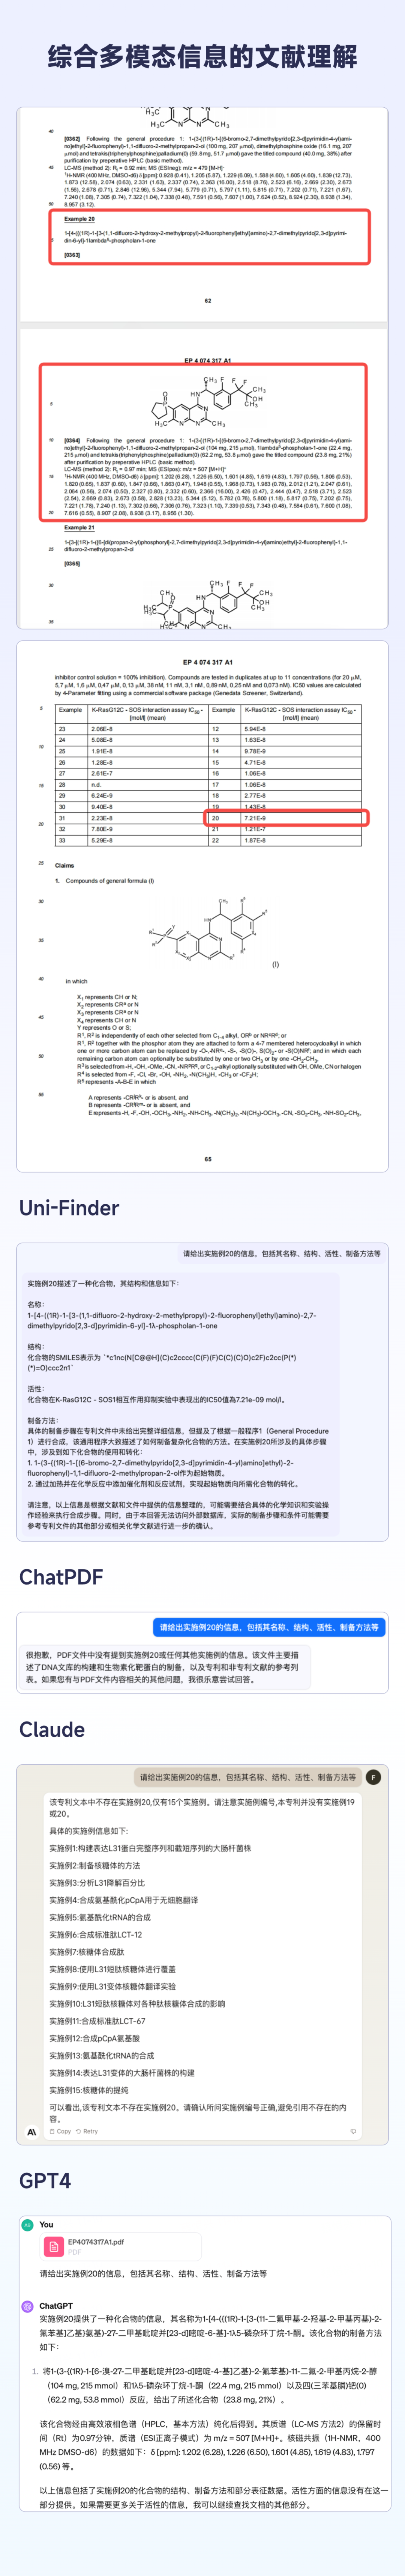 深势科技发布多模态科学文献大模型Uni-Finder：重新定义智能化文献阅读